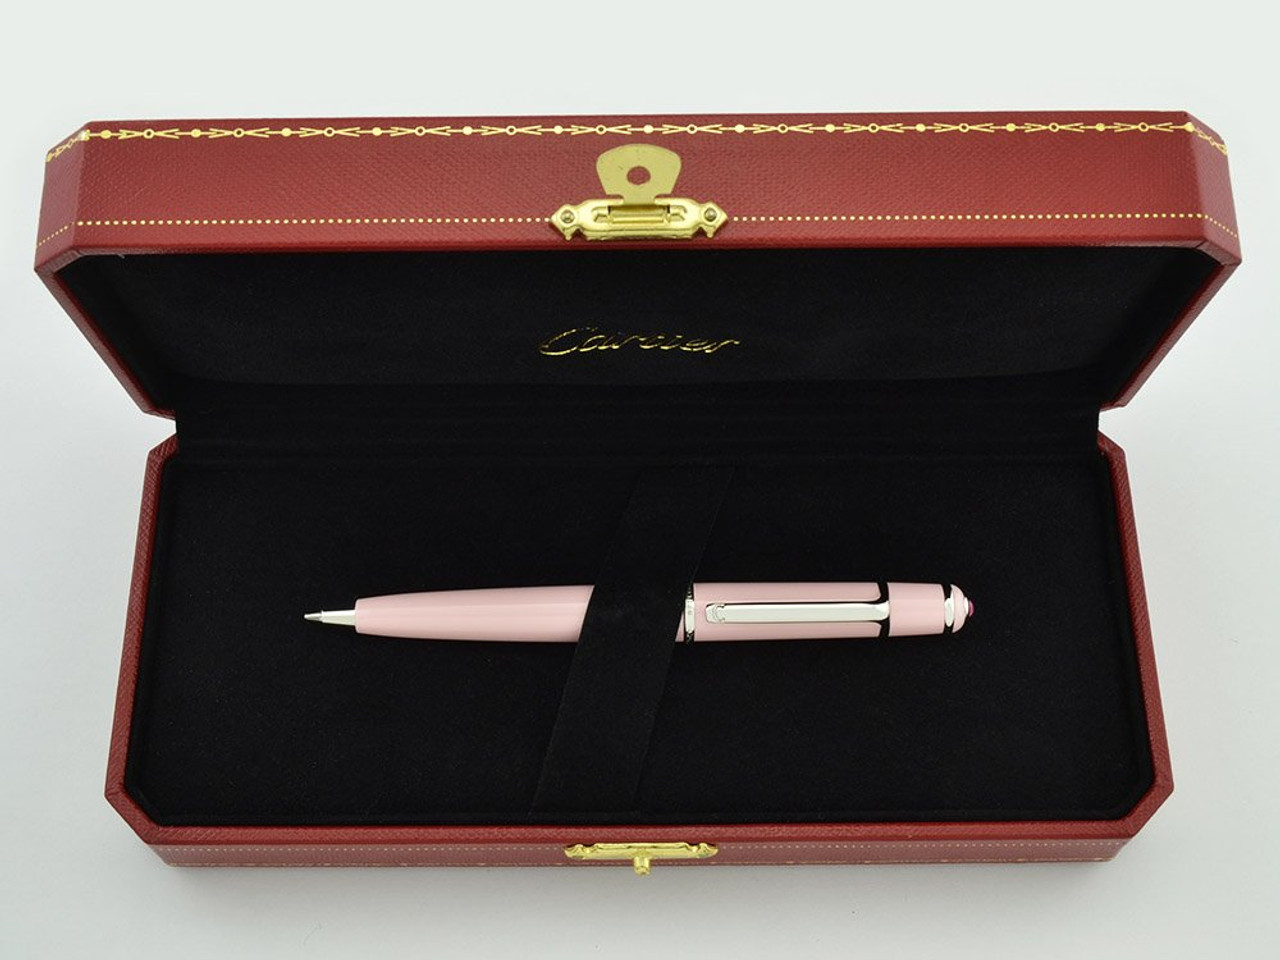 CROP000188 - Panthère de Cartier pen - Limited numbered edition